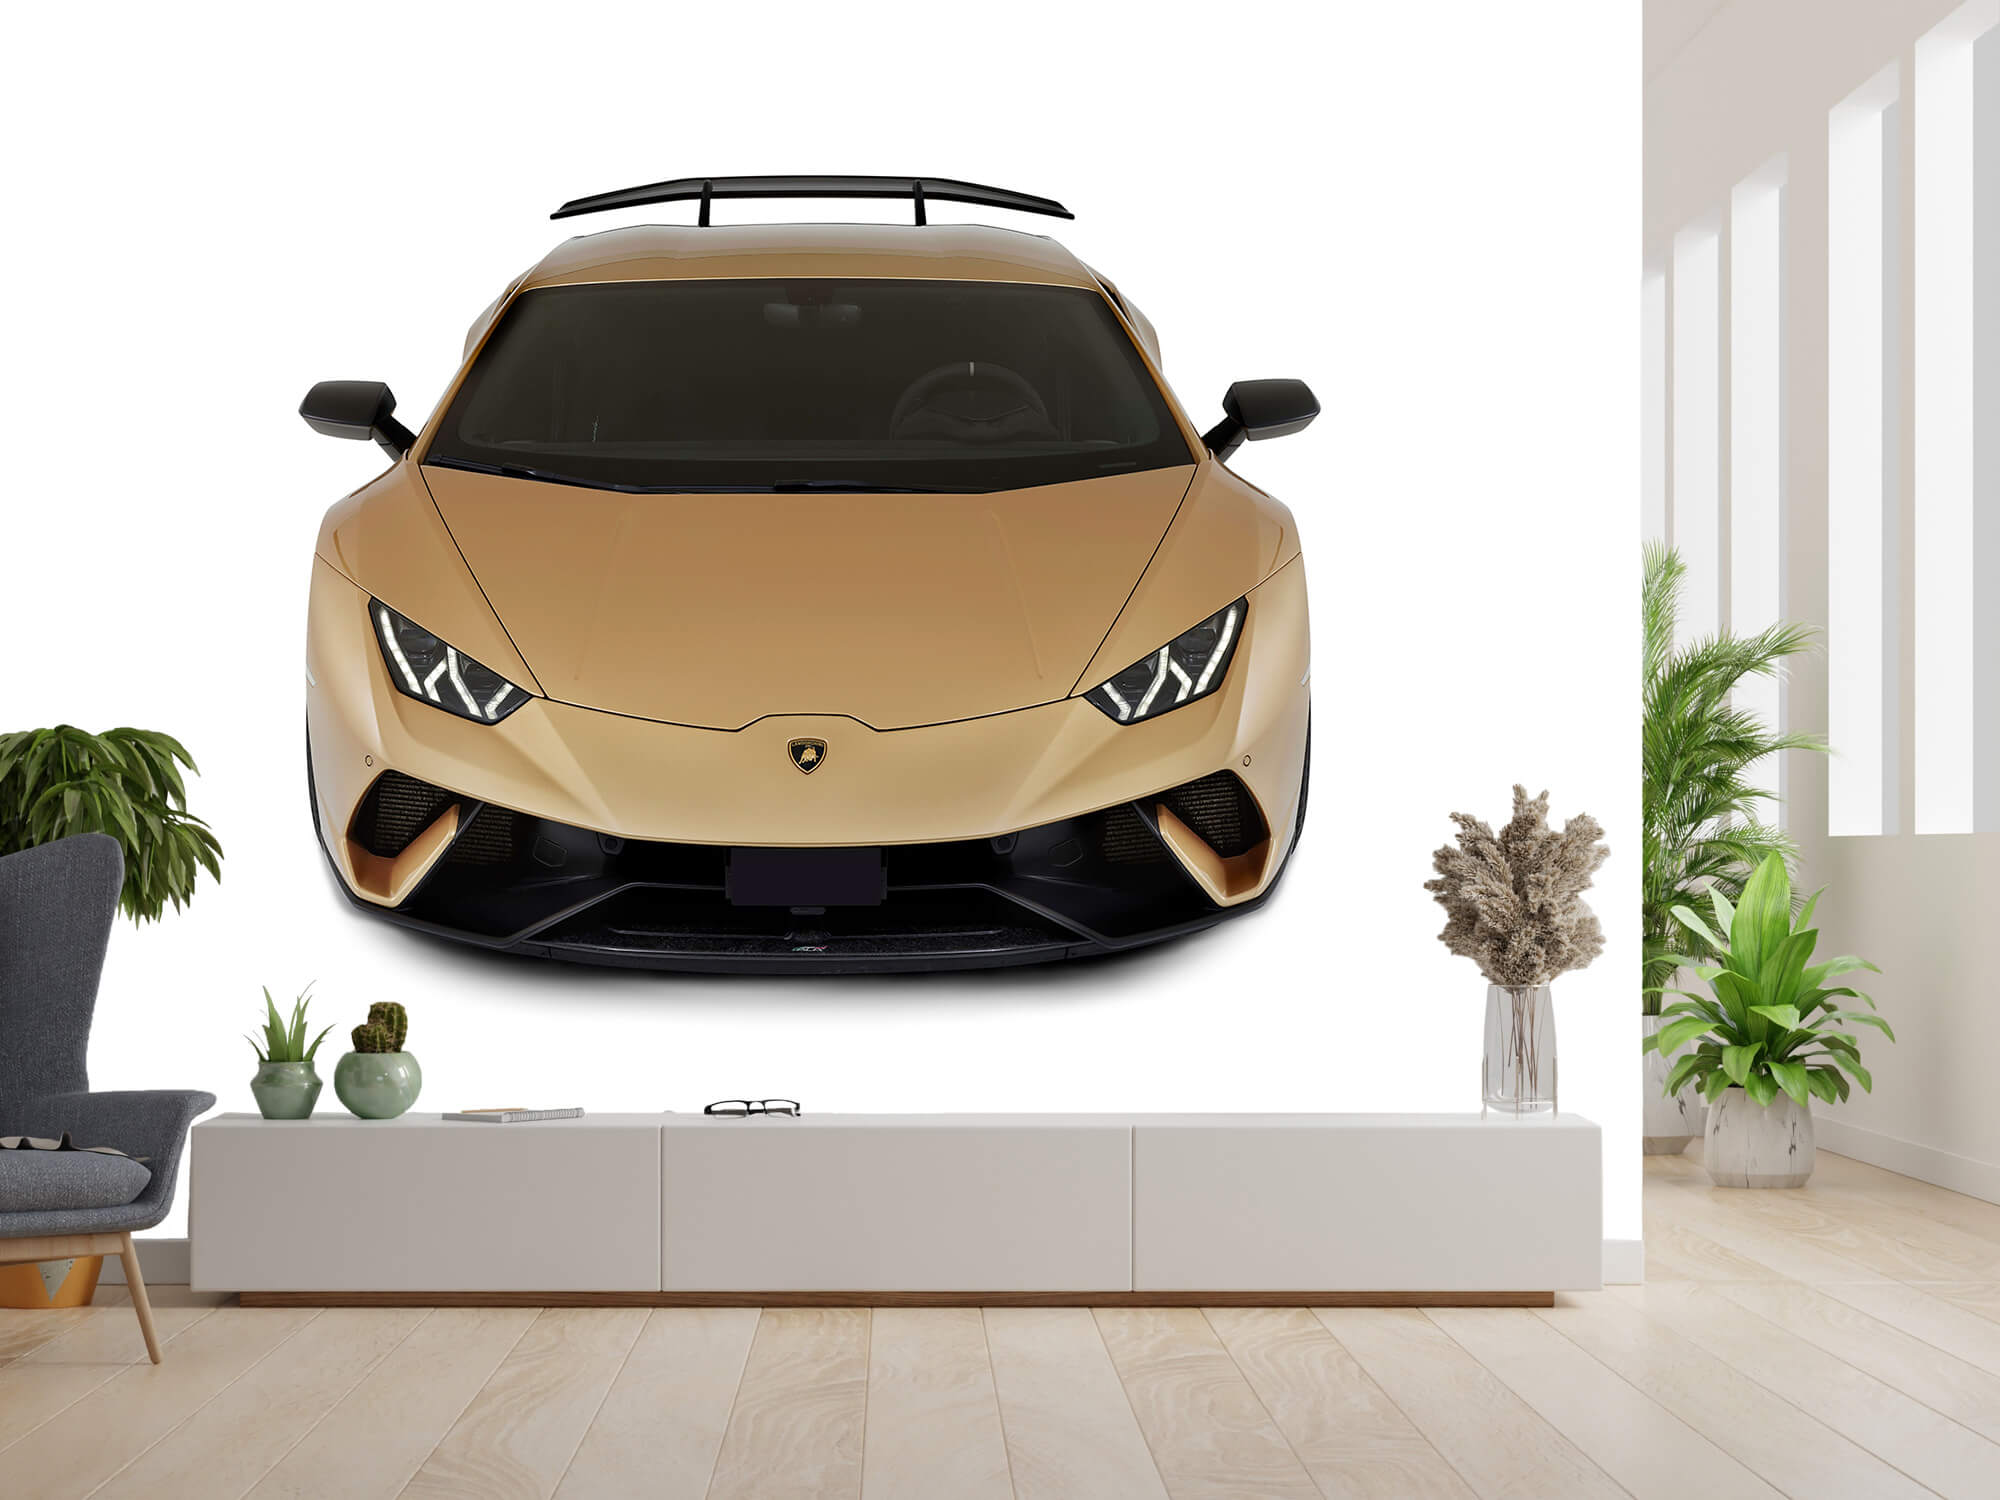 Empapelado Papel pintado con Lamborghini Huracán - frontal desde arriba, blanco - Habitación de niño 4